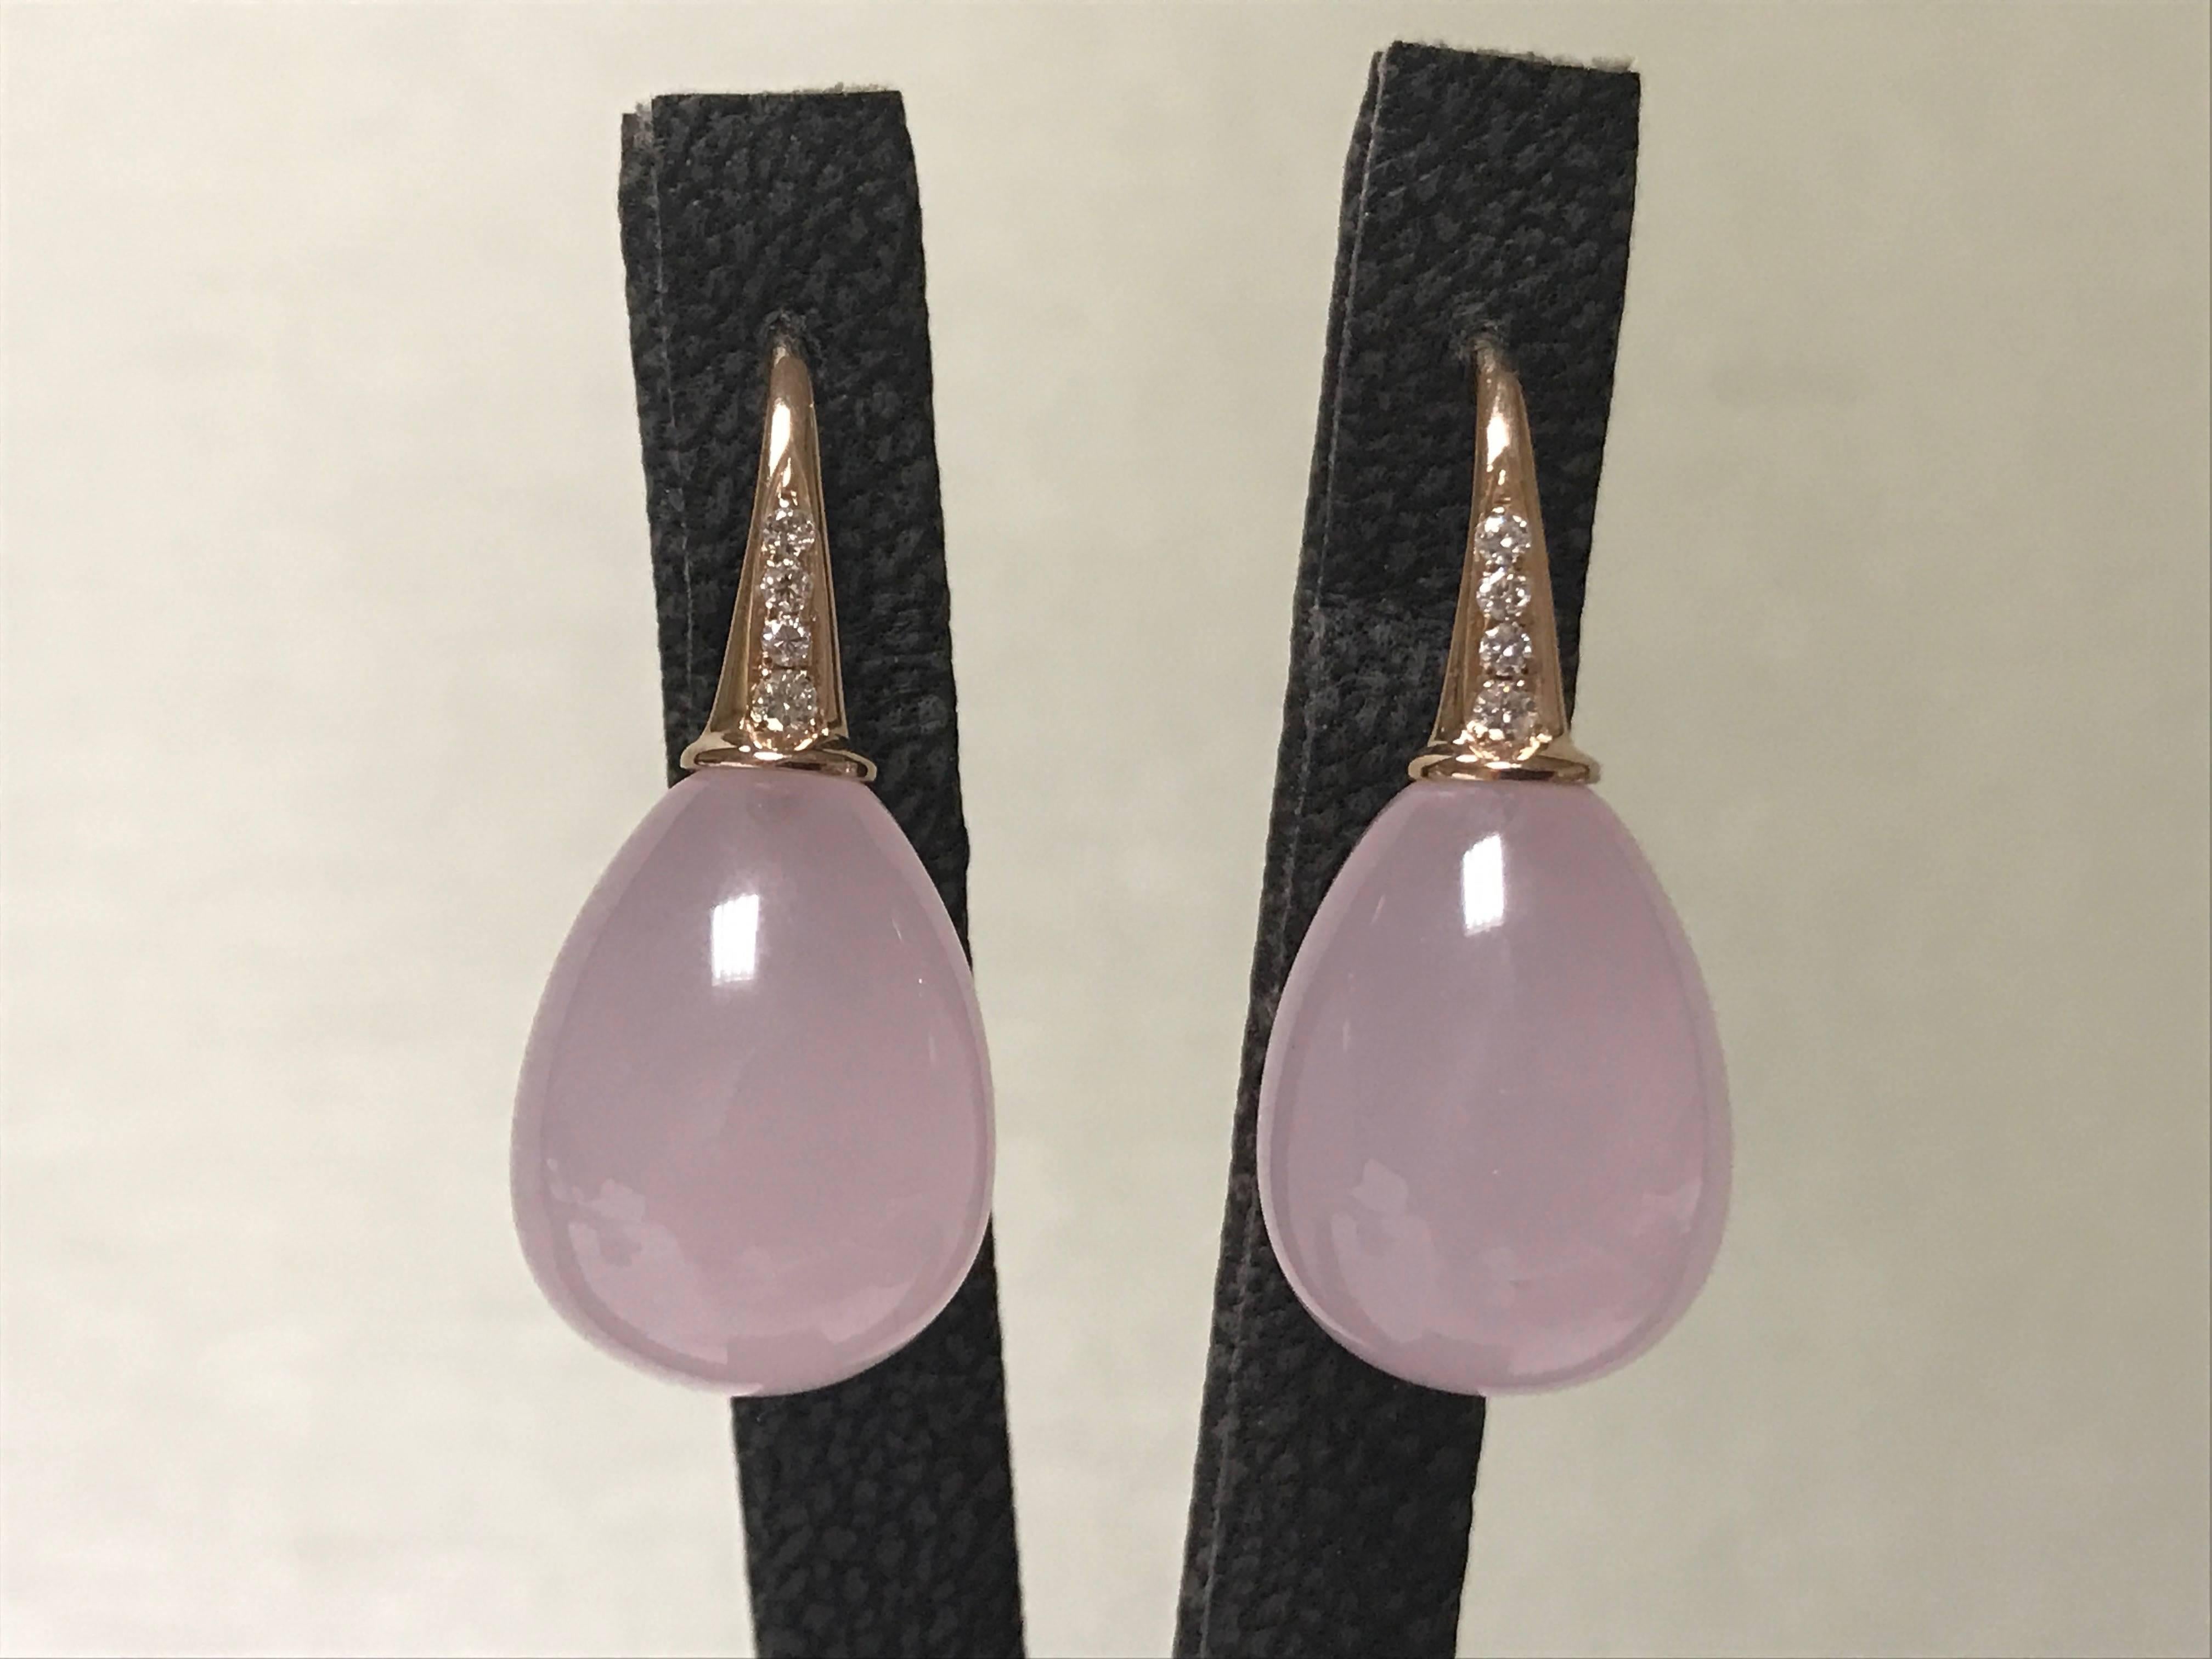 Pink Quartz and Diamonds Pink Gold Drop Earrings
Pink Gold 18 Carat 
Diamonds 0.12 Carat